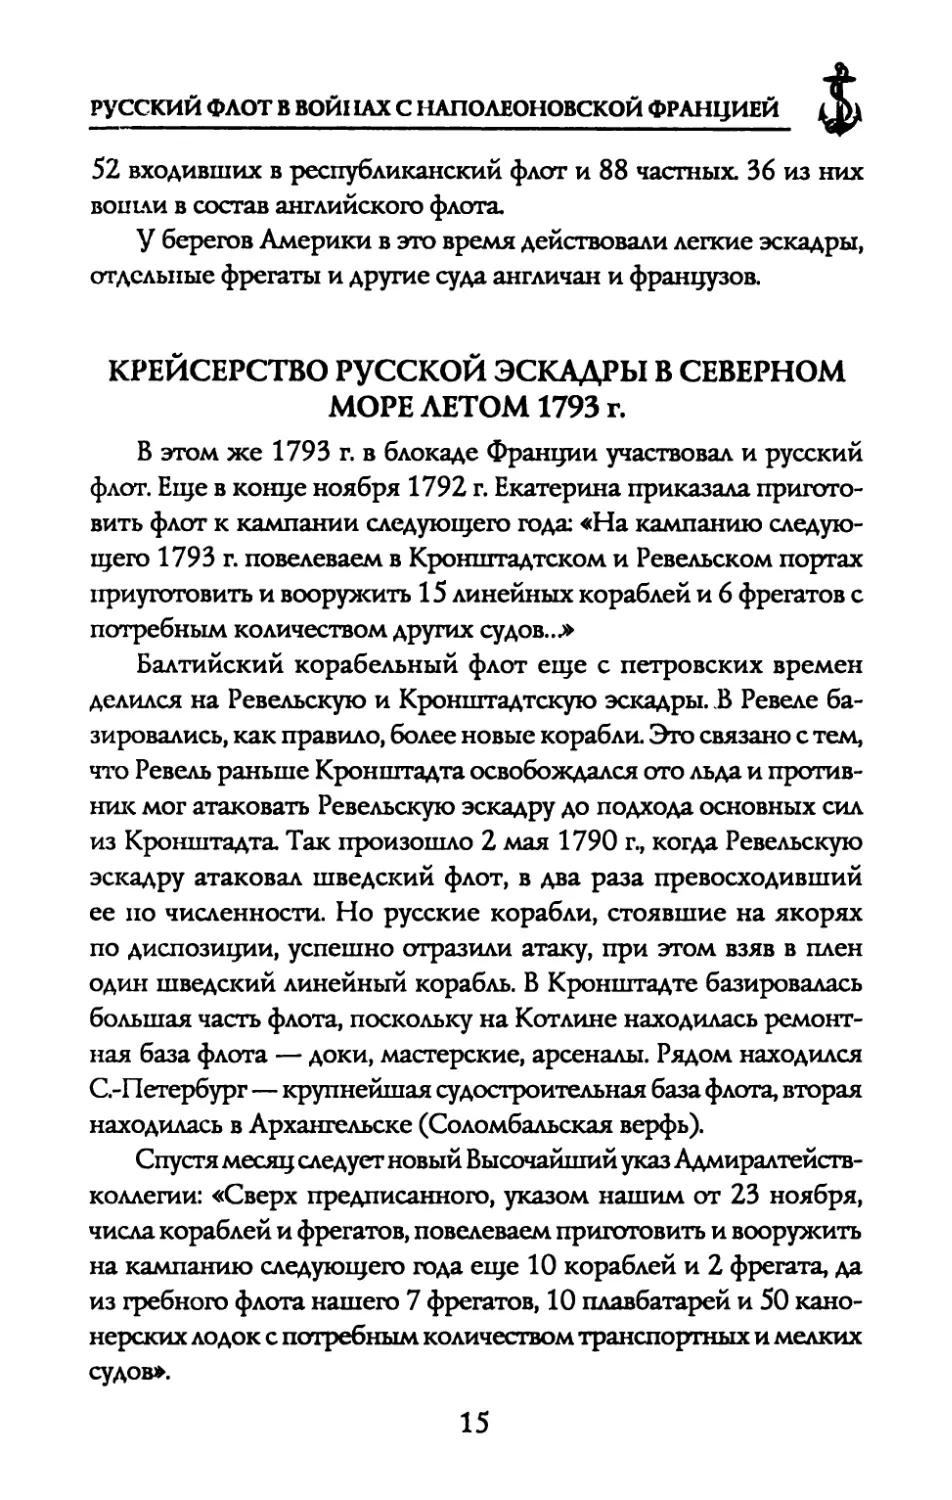 КРЕЙСЕРСТВО РУССКОЙ ЭСКАДРЫ В СЕВЕРНОМ МОРЕ ЛЕТОМ 1793 г.